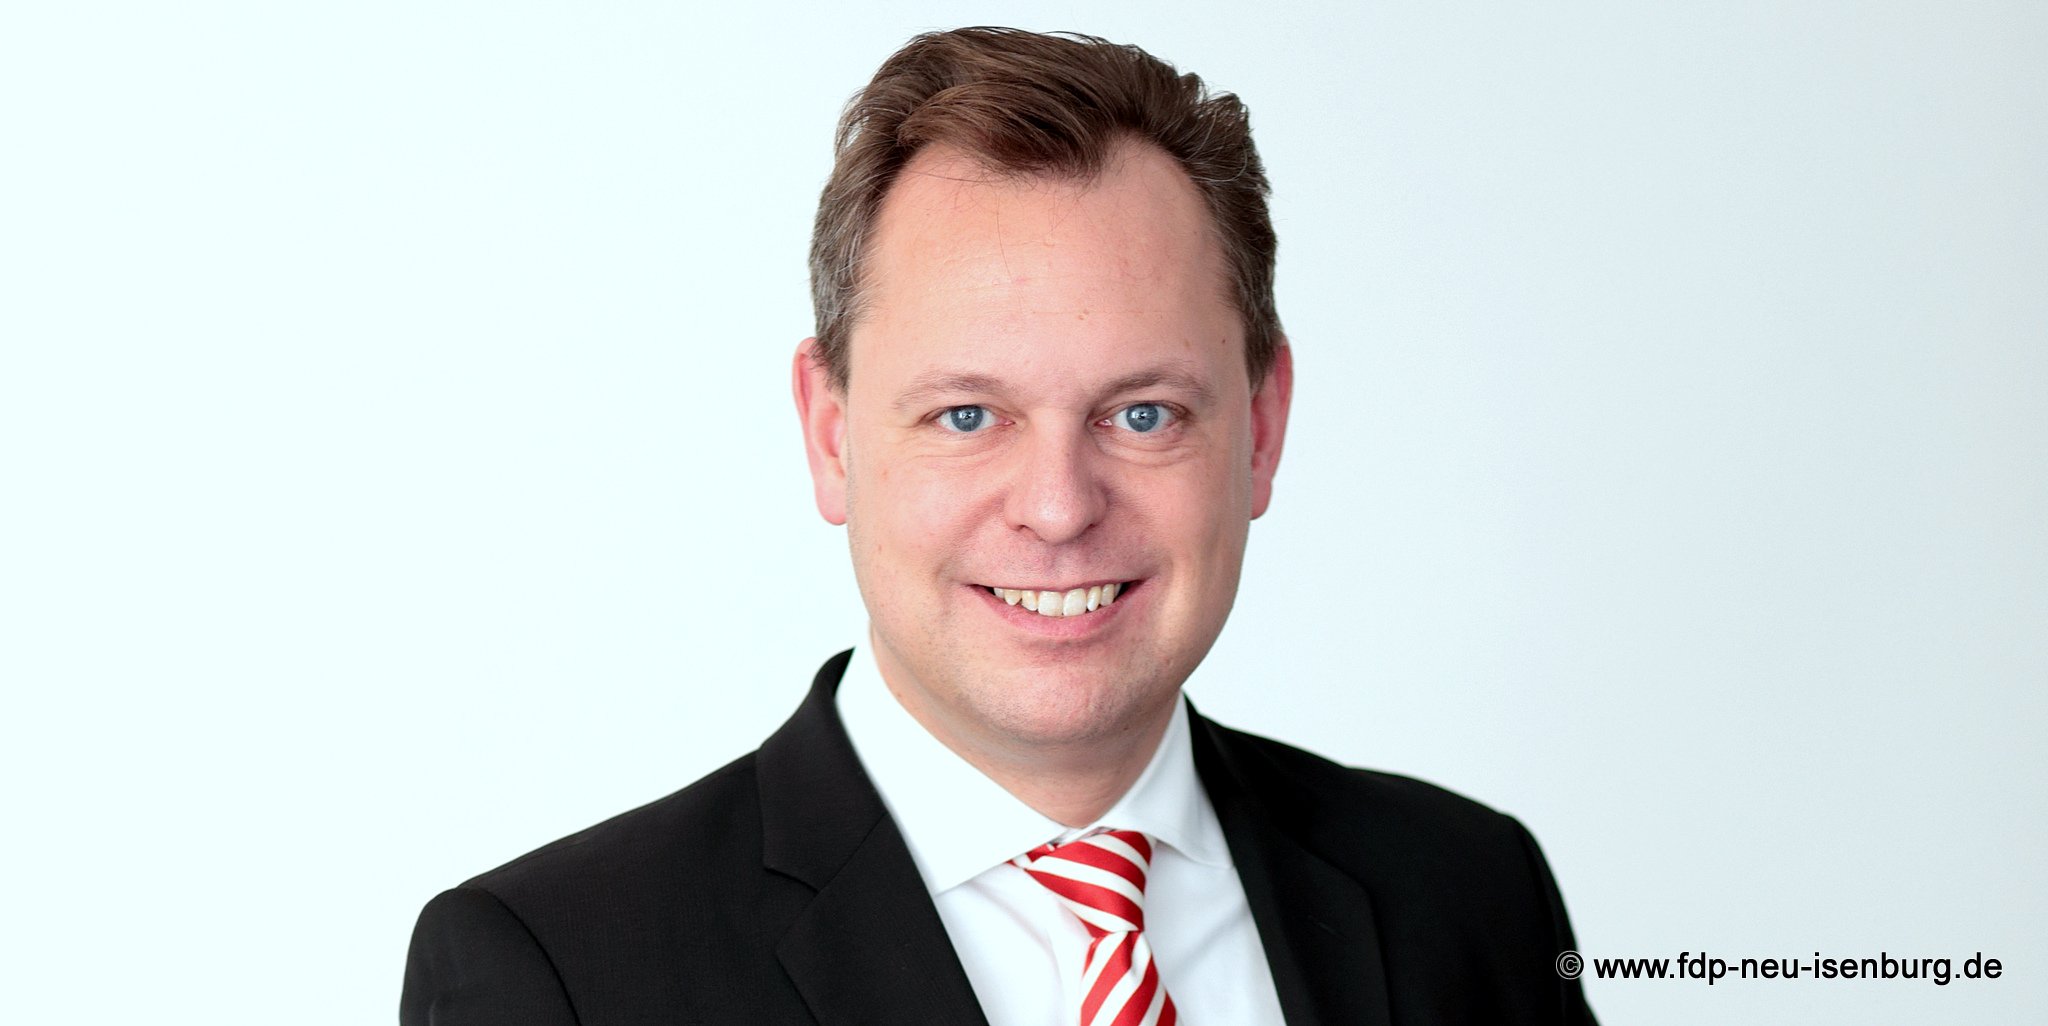 Thilo Seipel, Spitzenkandidat und designierter Fraktionsvorsitzender